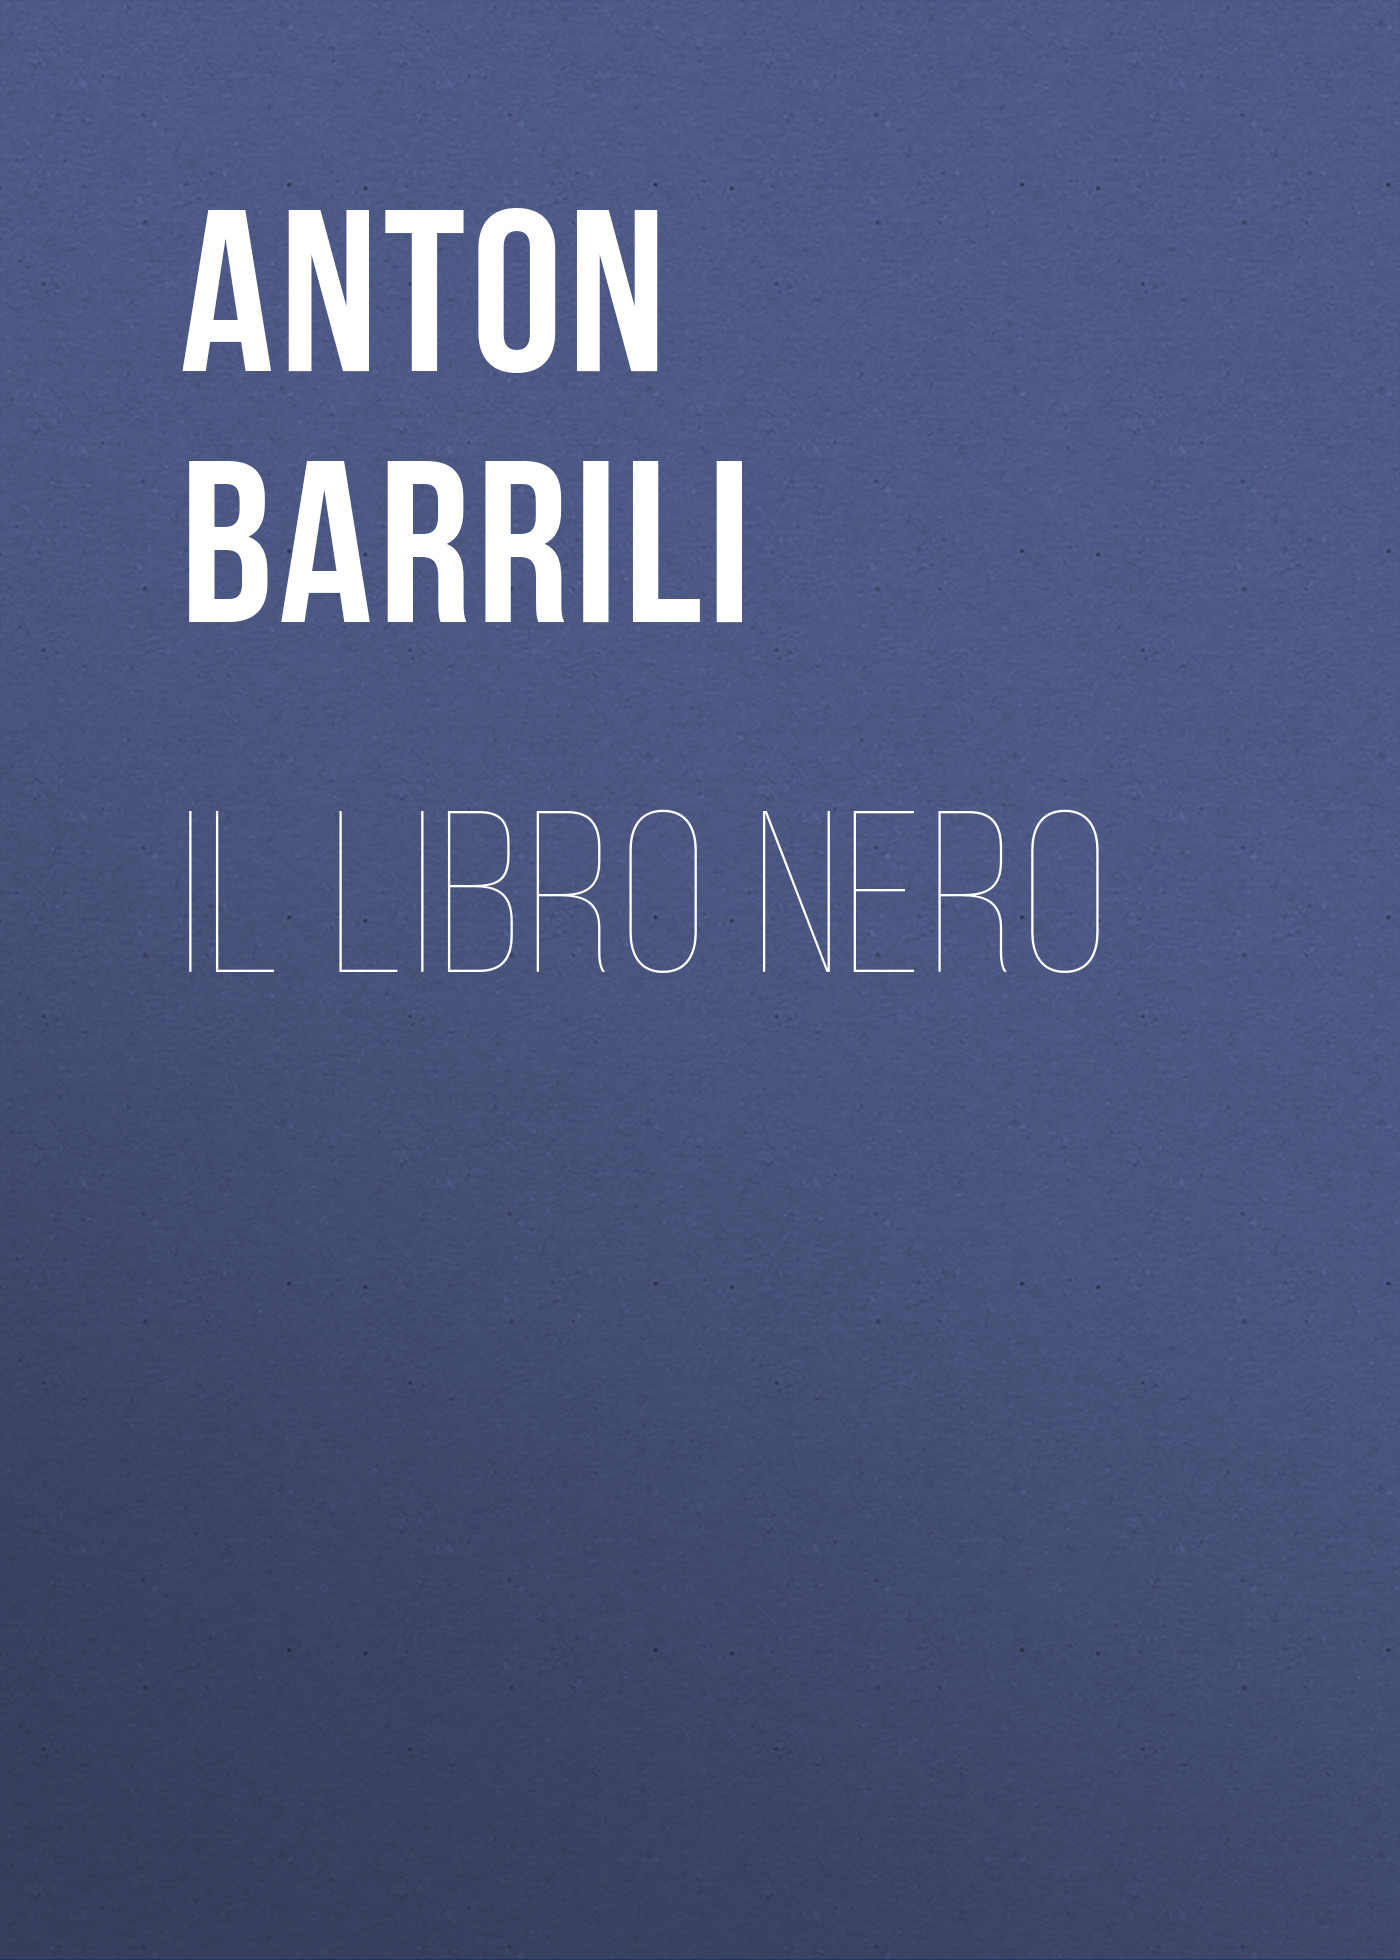 Книга Il Libro Nero из серии , созданная Anton Barrili, может относится к жанру Зарубежная старинная литература, Зарубежная классика. Стоимость электронной книги Il Libro Nero с идентификатором 24177332 составляет 0.90 руб.